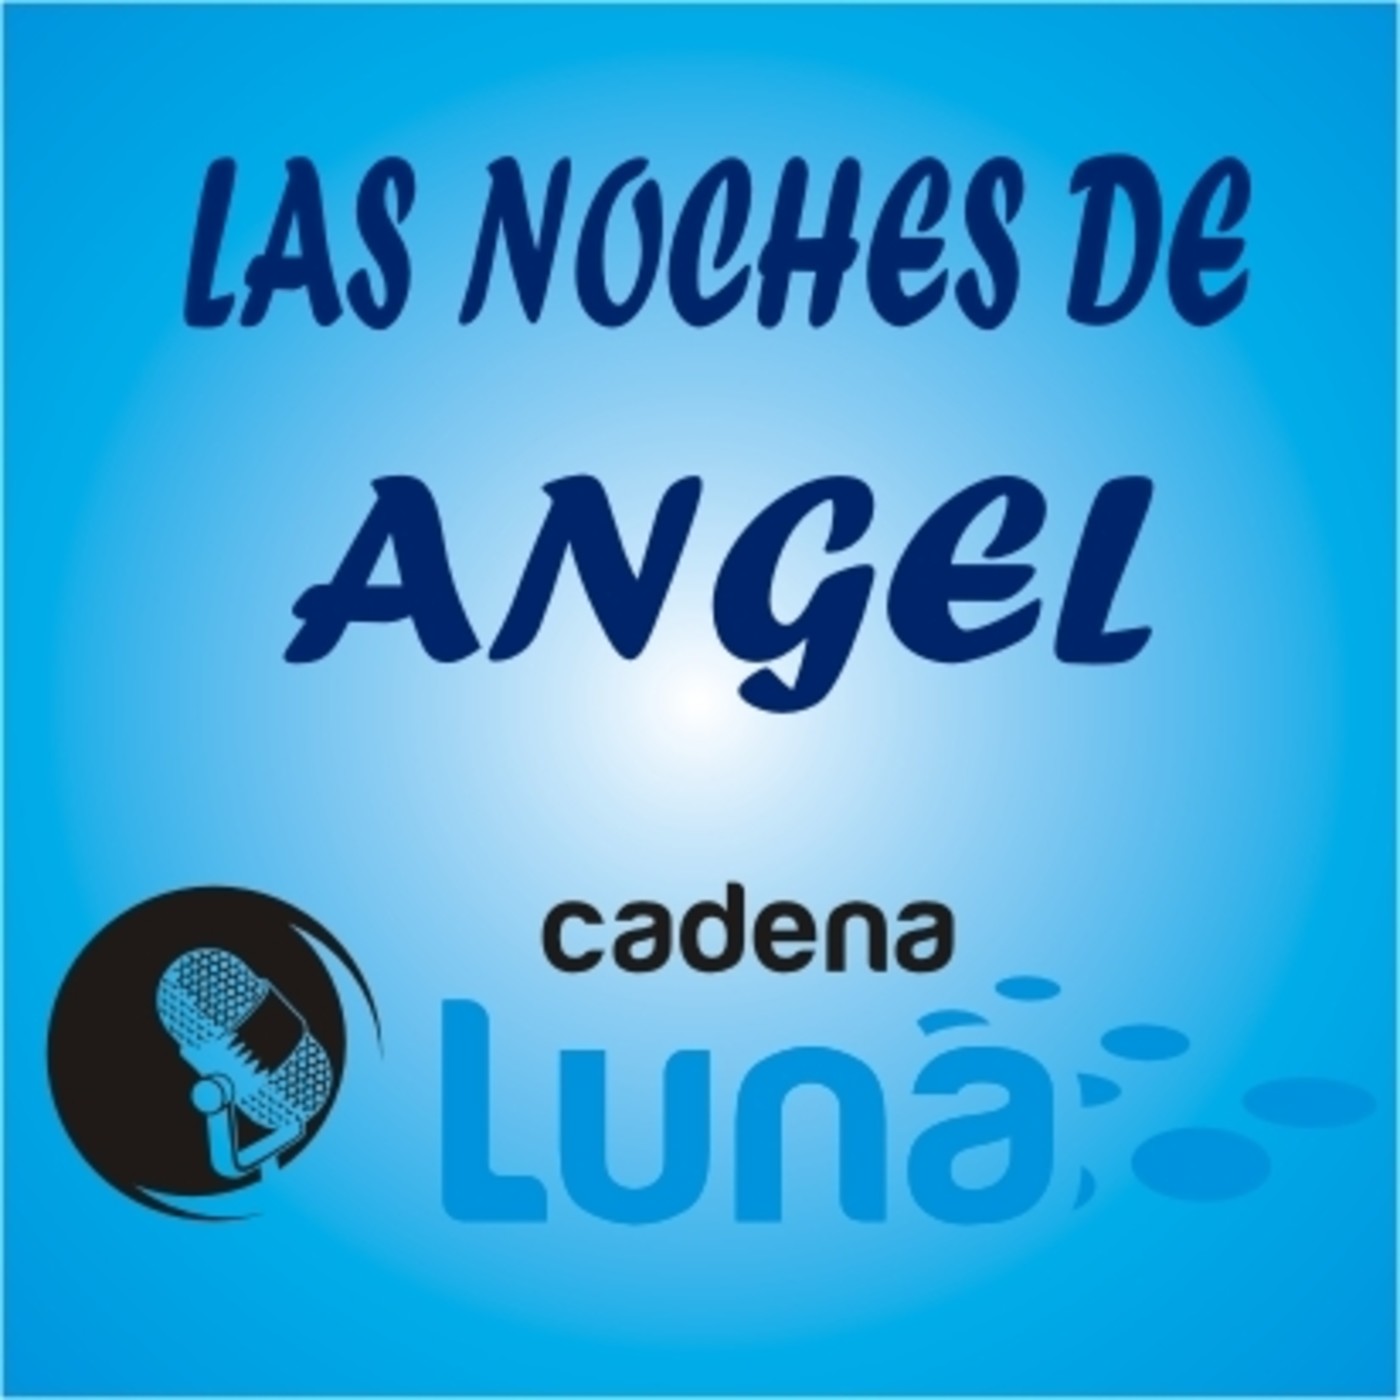 Las noches de Angel cadena luna - 25 - 04 - 24